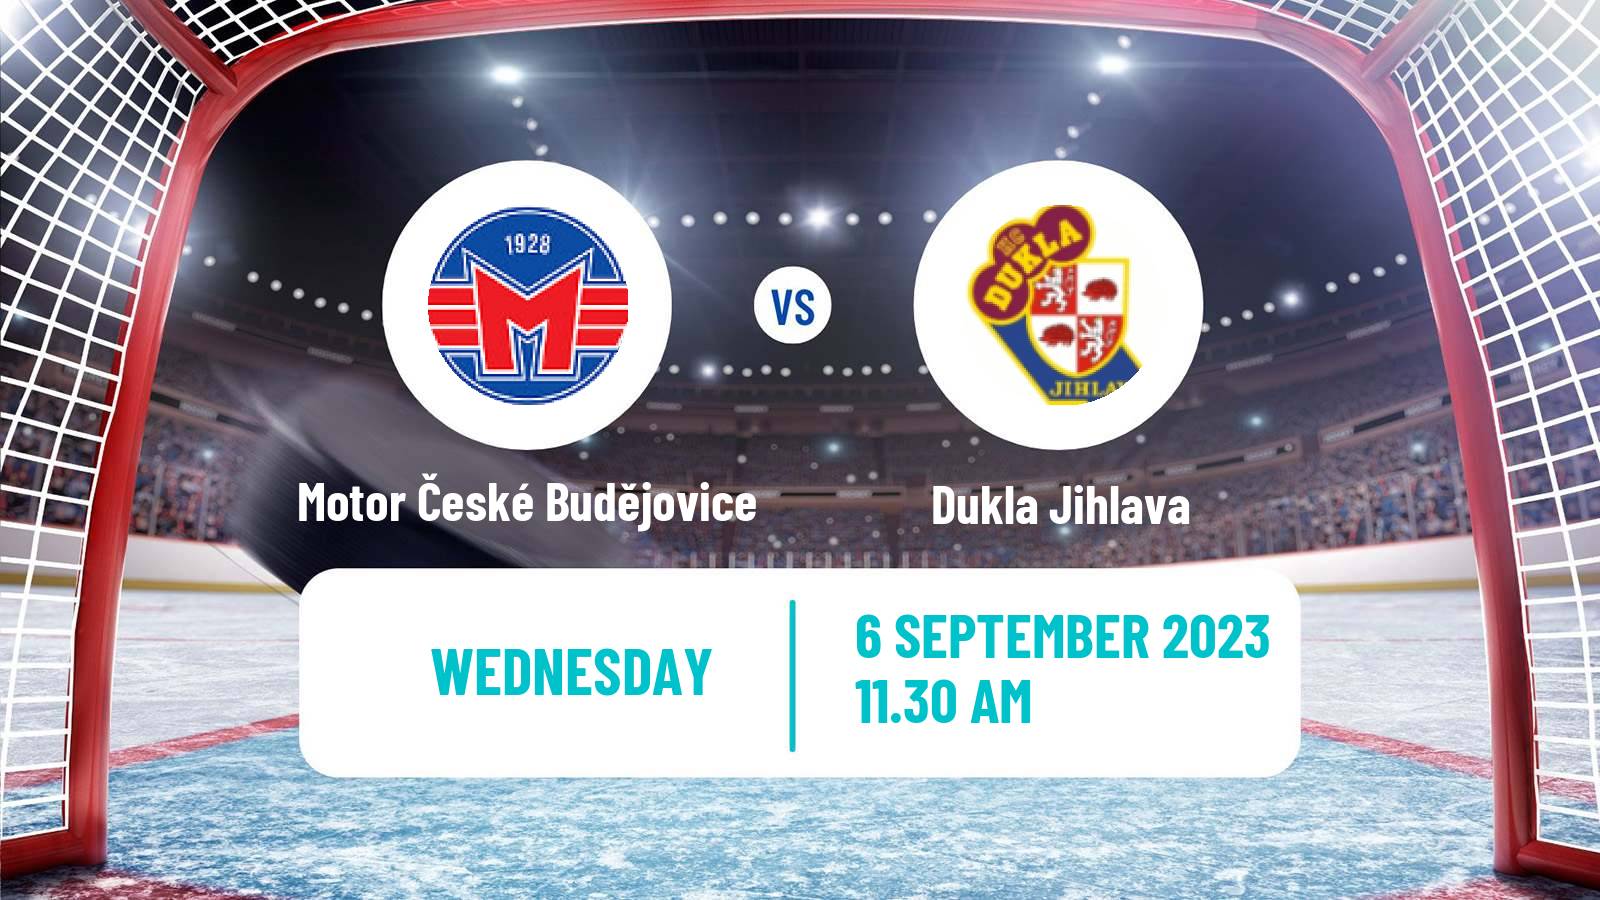 Hockey Club Friendly Ice Hockey Motor České Budějovice - Dukla Jihlava